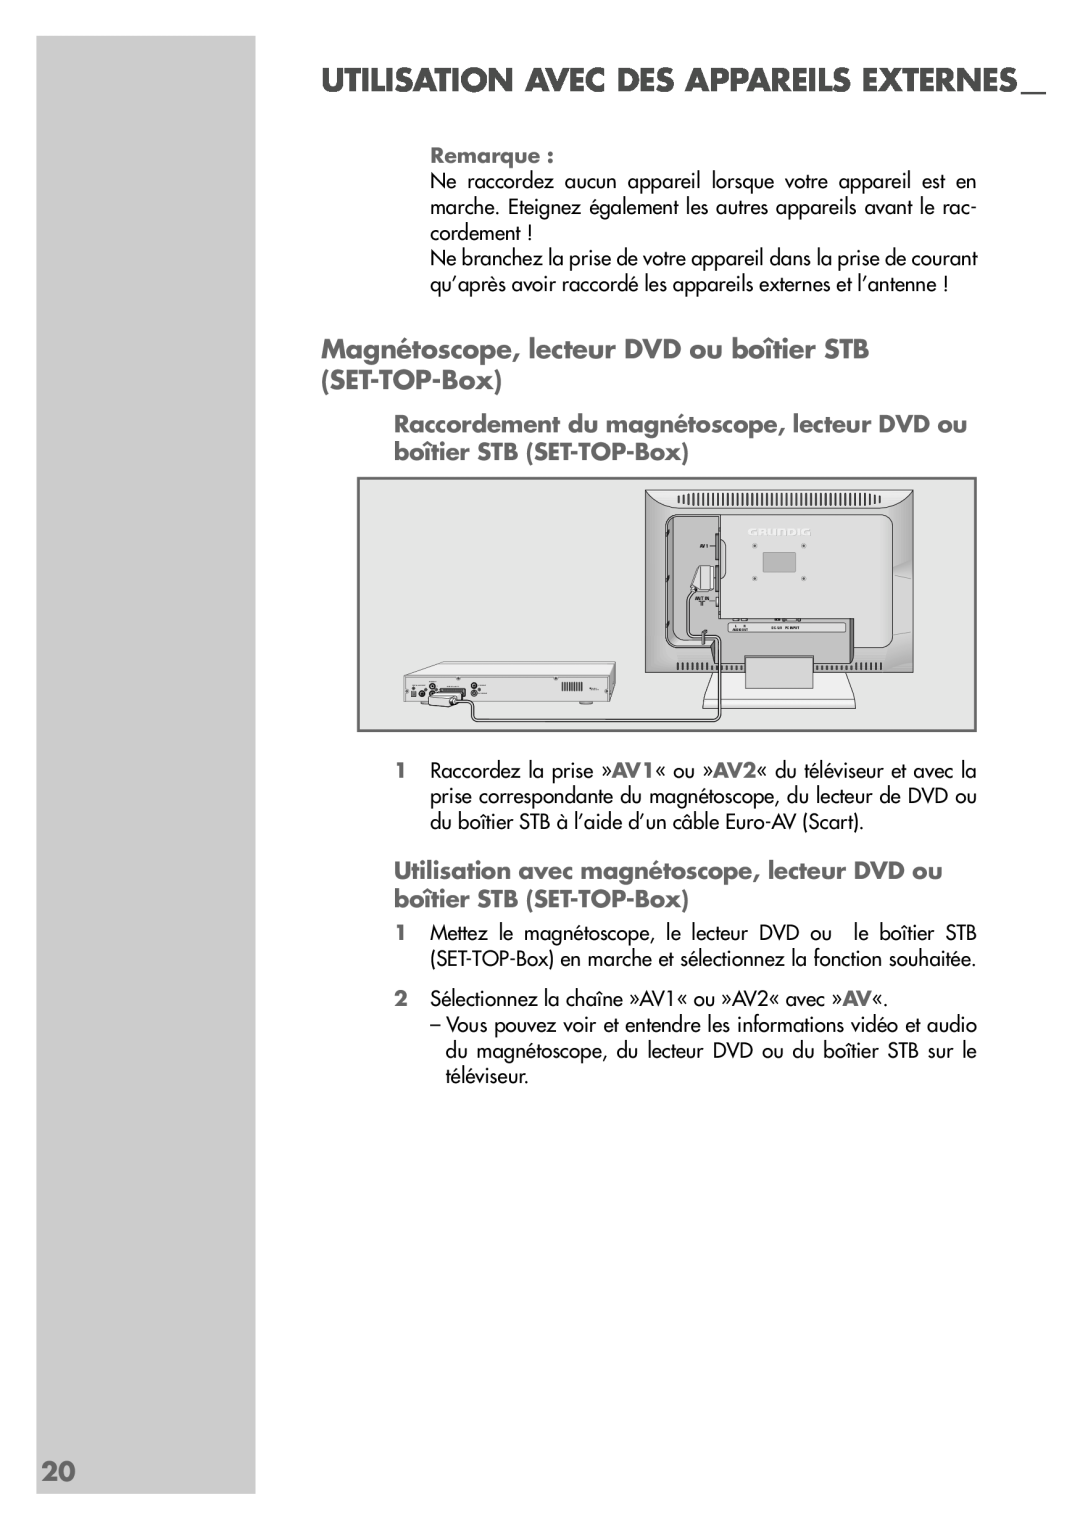 Grundig LW49-7710BS manual Utilisation Avec Des Appareils Externes, Magnétoscope, lecteur DVD ou boîtier STB SET-TOP-Box 